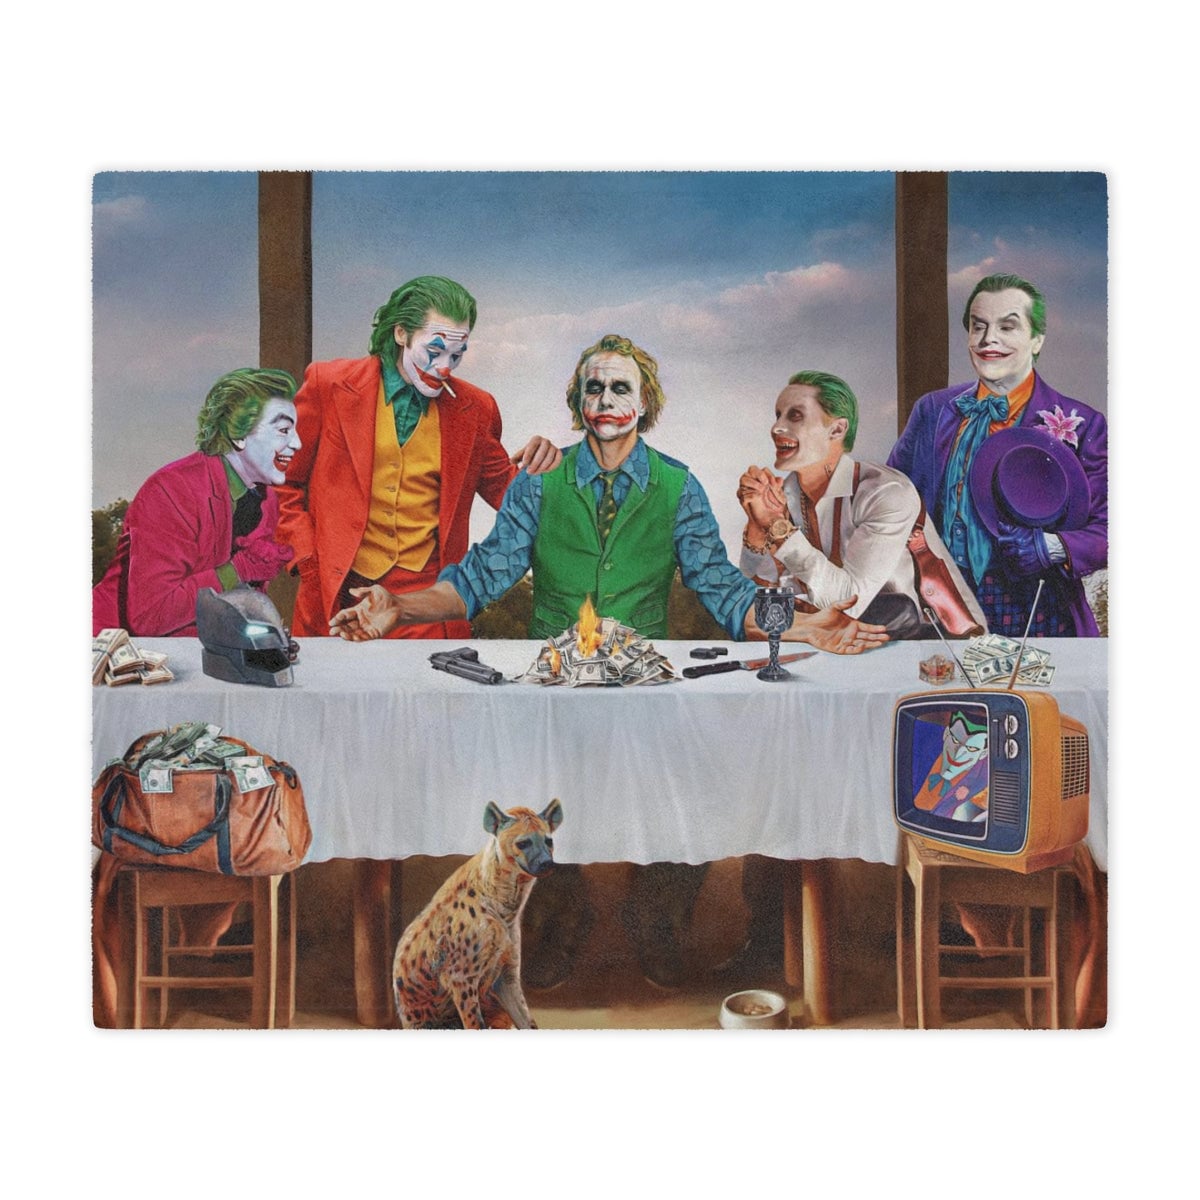 Humorous joker figures featured in the artistic design of The Last Supper Jokers Blanket.